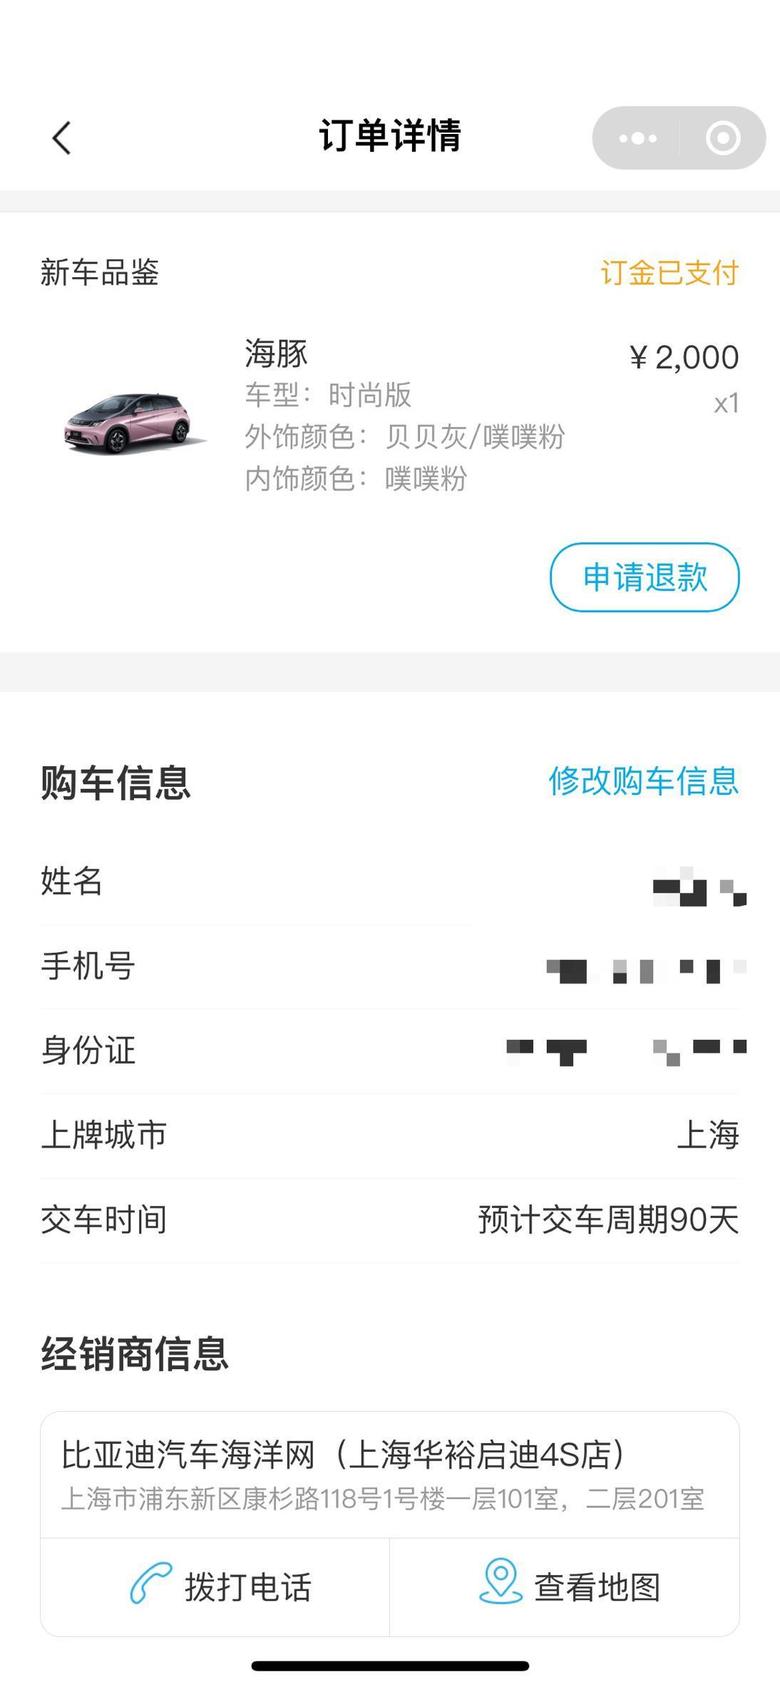 海豚 坐标上海11月底定了个小粉粉上牌1k保险说四千多期待一月份提车